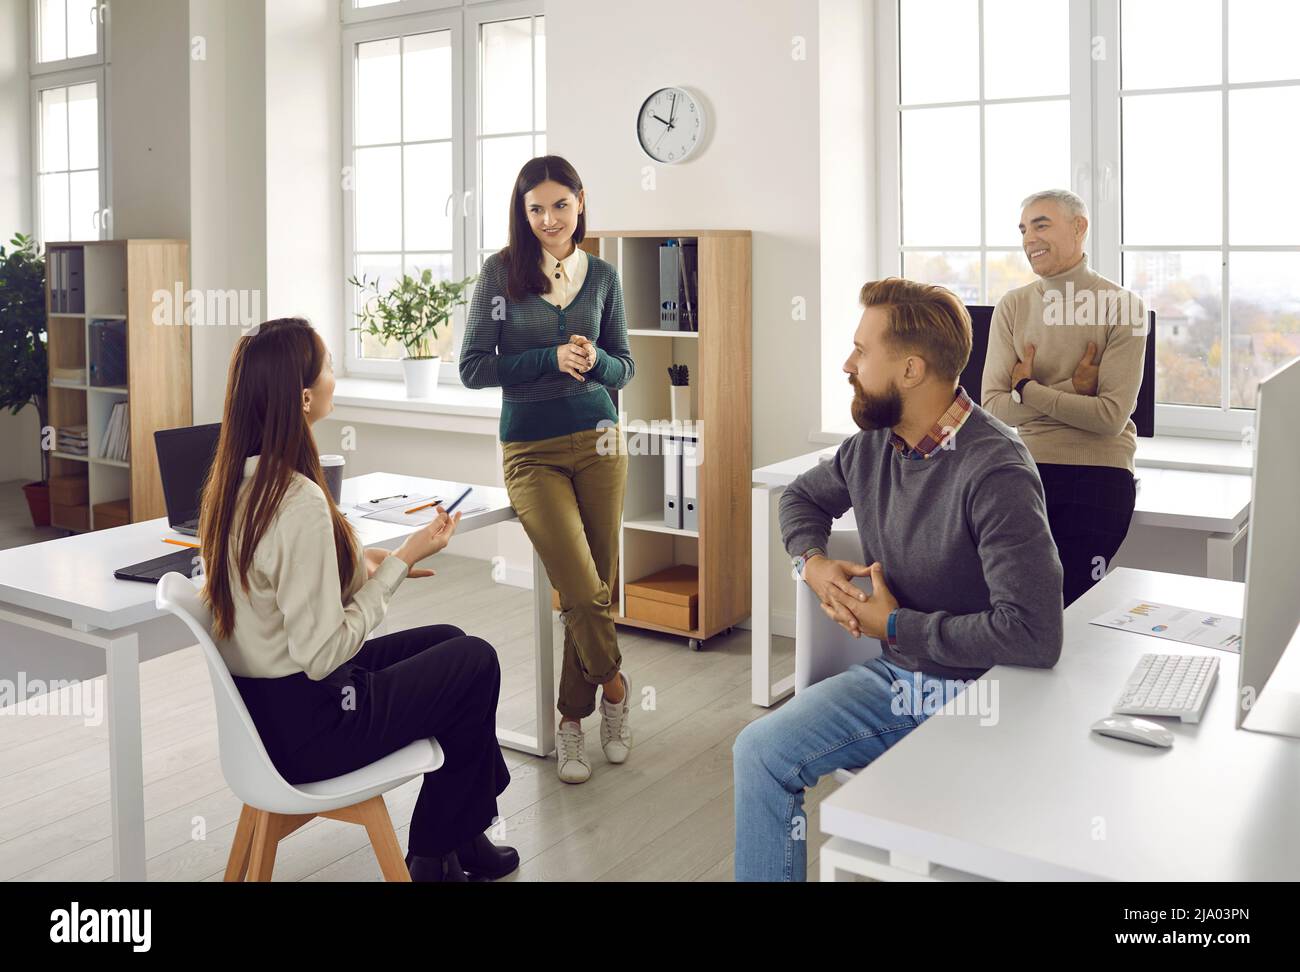 Gruppe von Büromitarbeitern, die während eines informellen Arbeitsgesprächs miteinander kommunizieren oder miteinander sprechen. Stockfoto